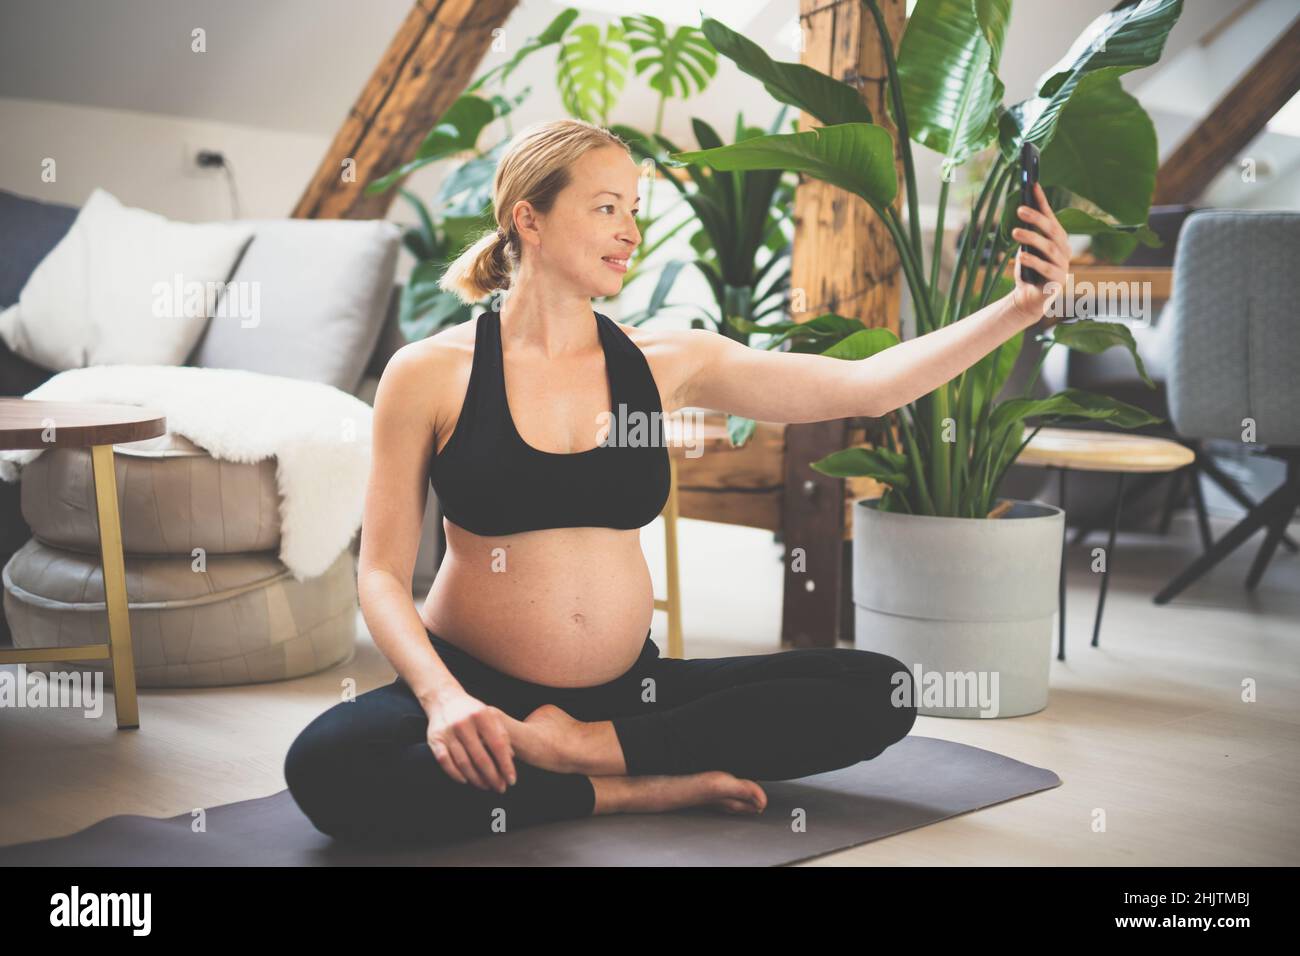 Giovane felice e allegra bella donna incinta prendendo selfie con il suo cellulare, pur rimanendo in forma, sportiva e attiva sul suo congedo di maternità Foto Stock